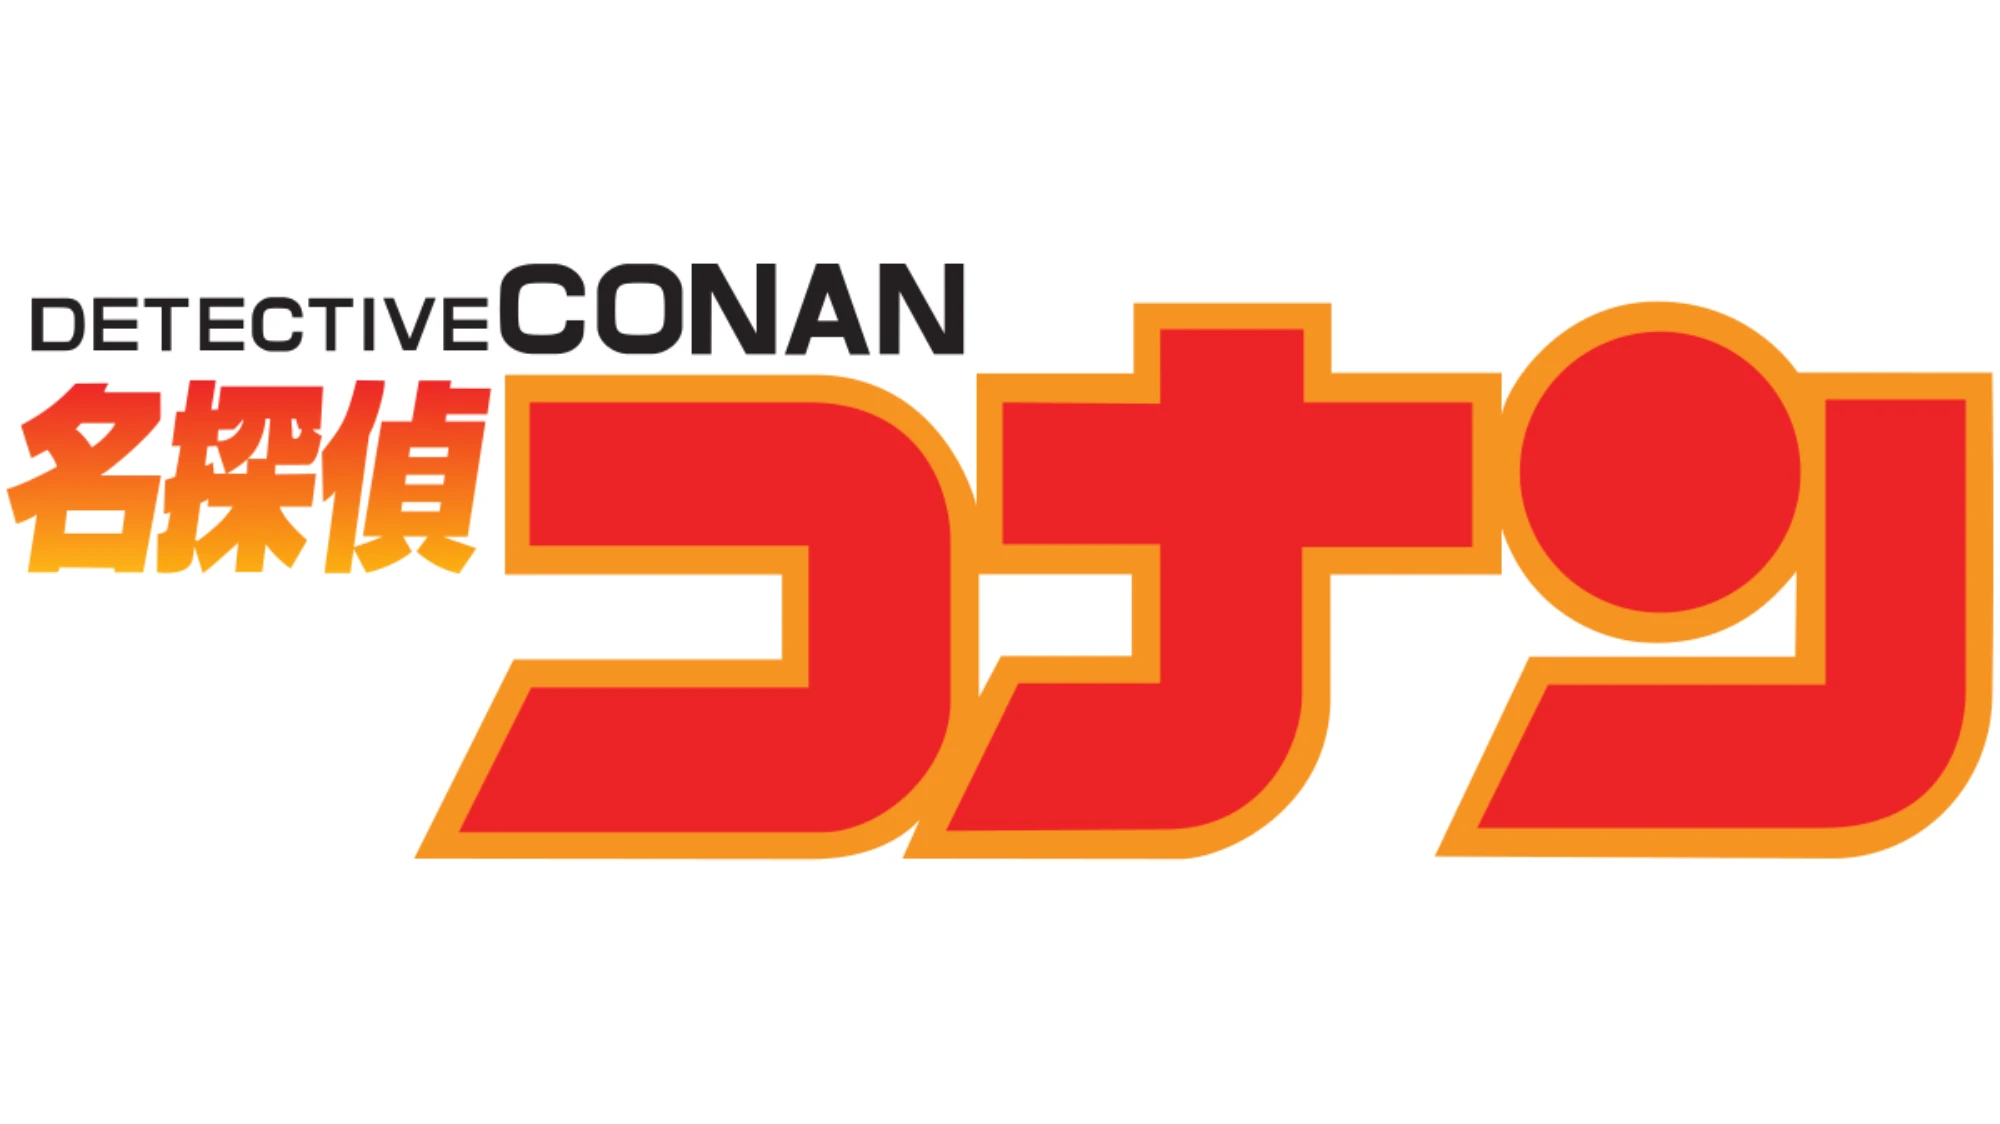 detective-conan-logo